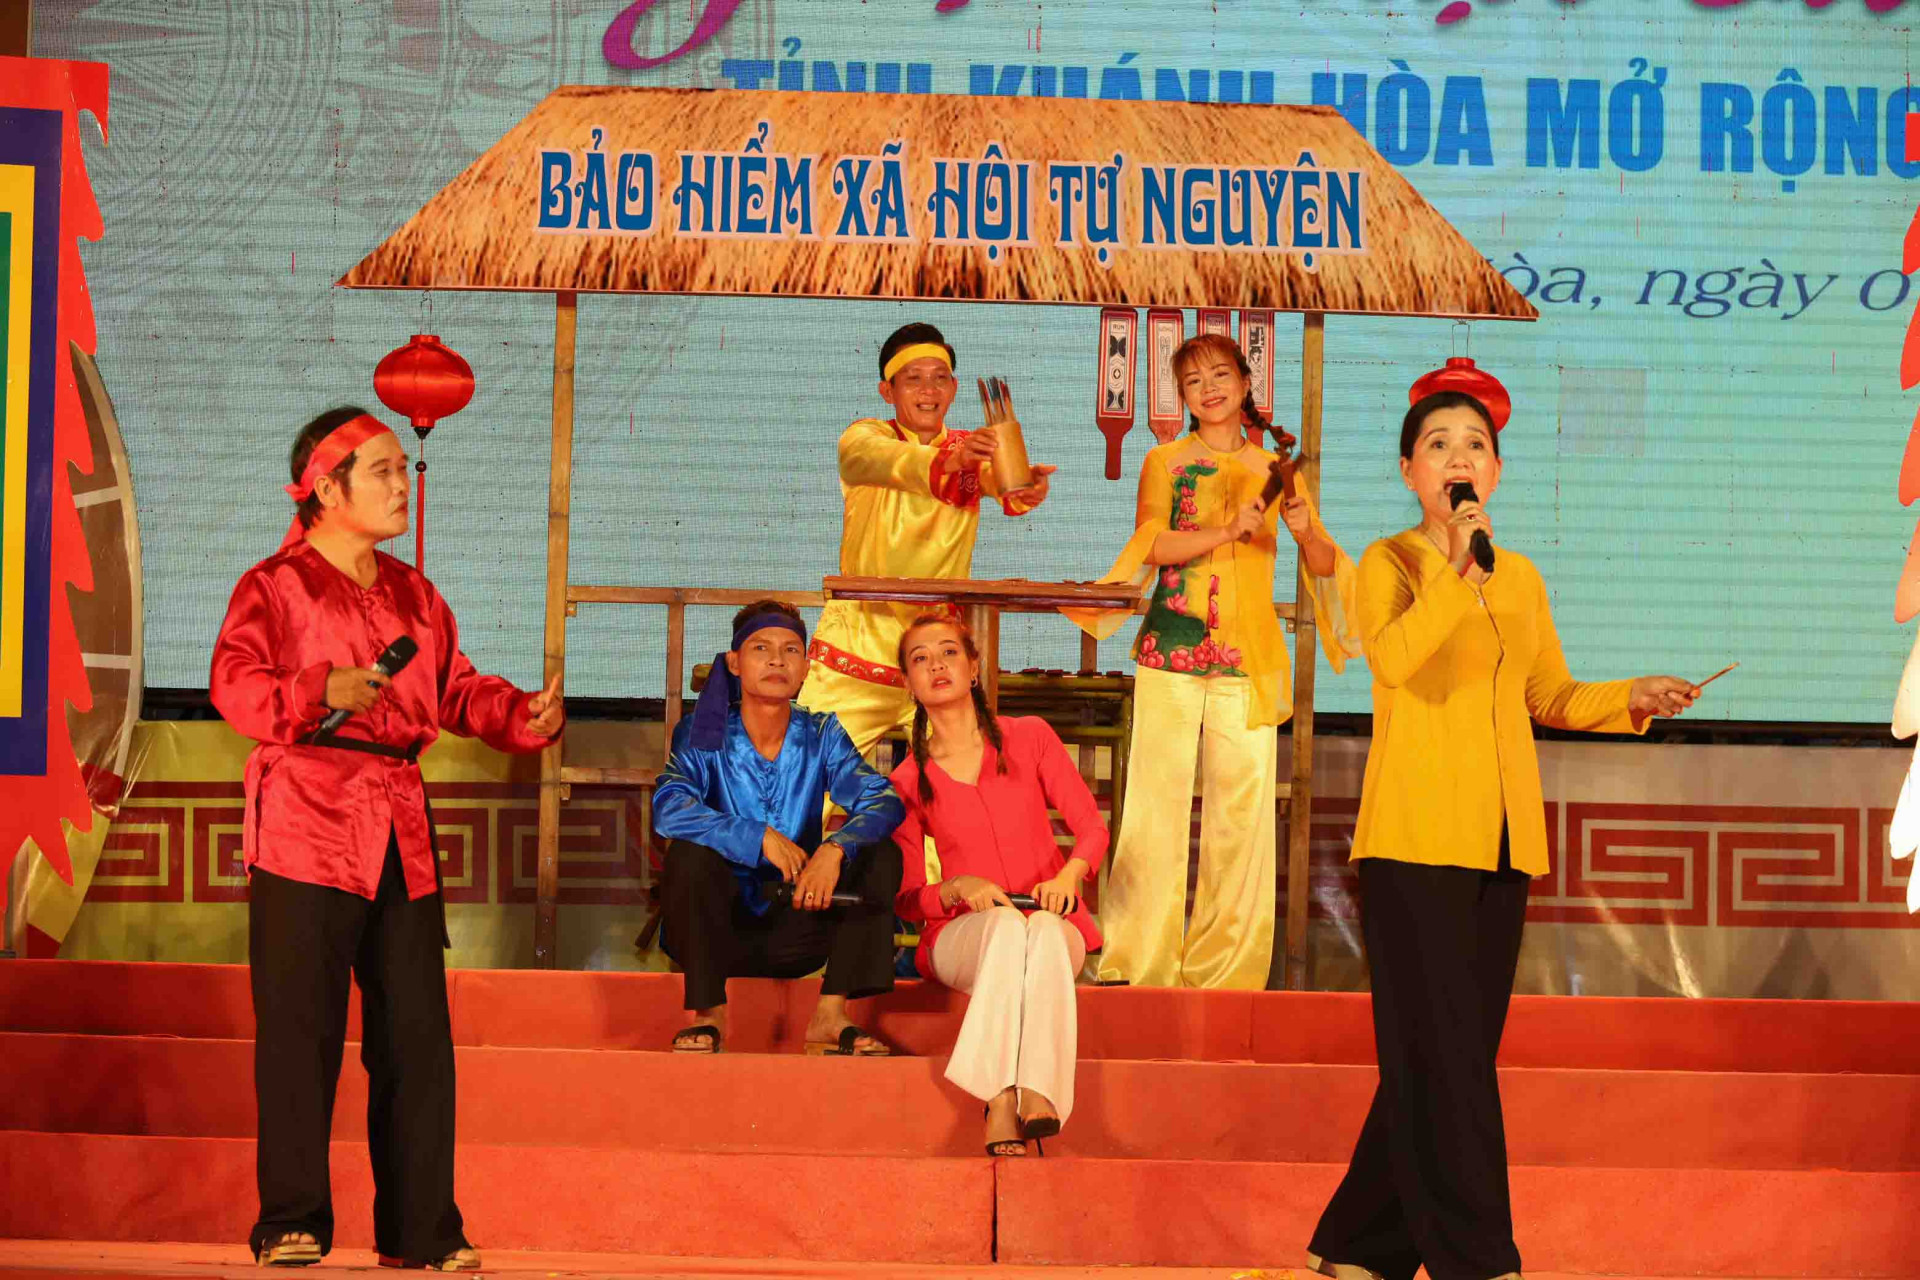 Bai Choi performance of Quang Nam Provincial Social Insurance